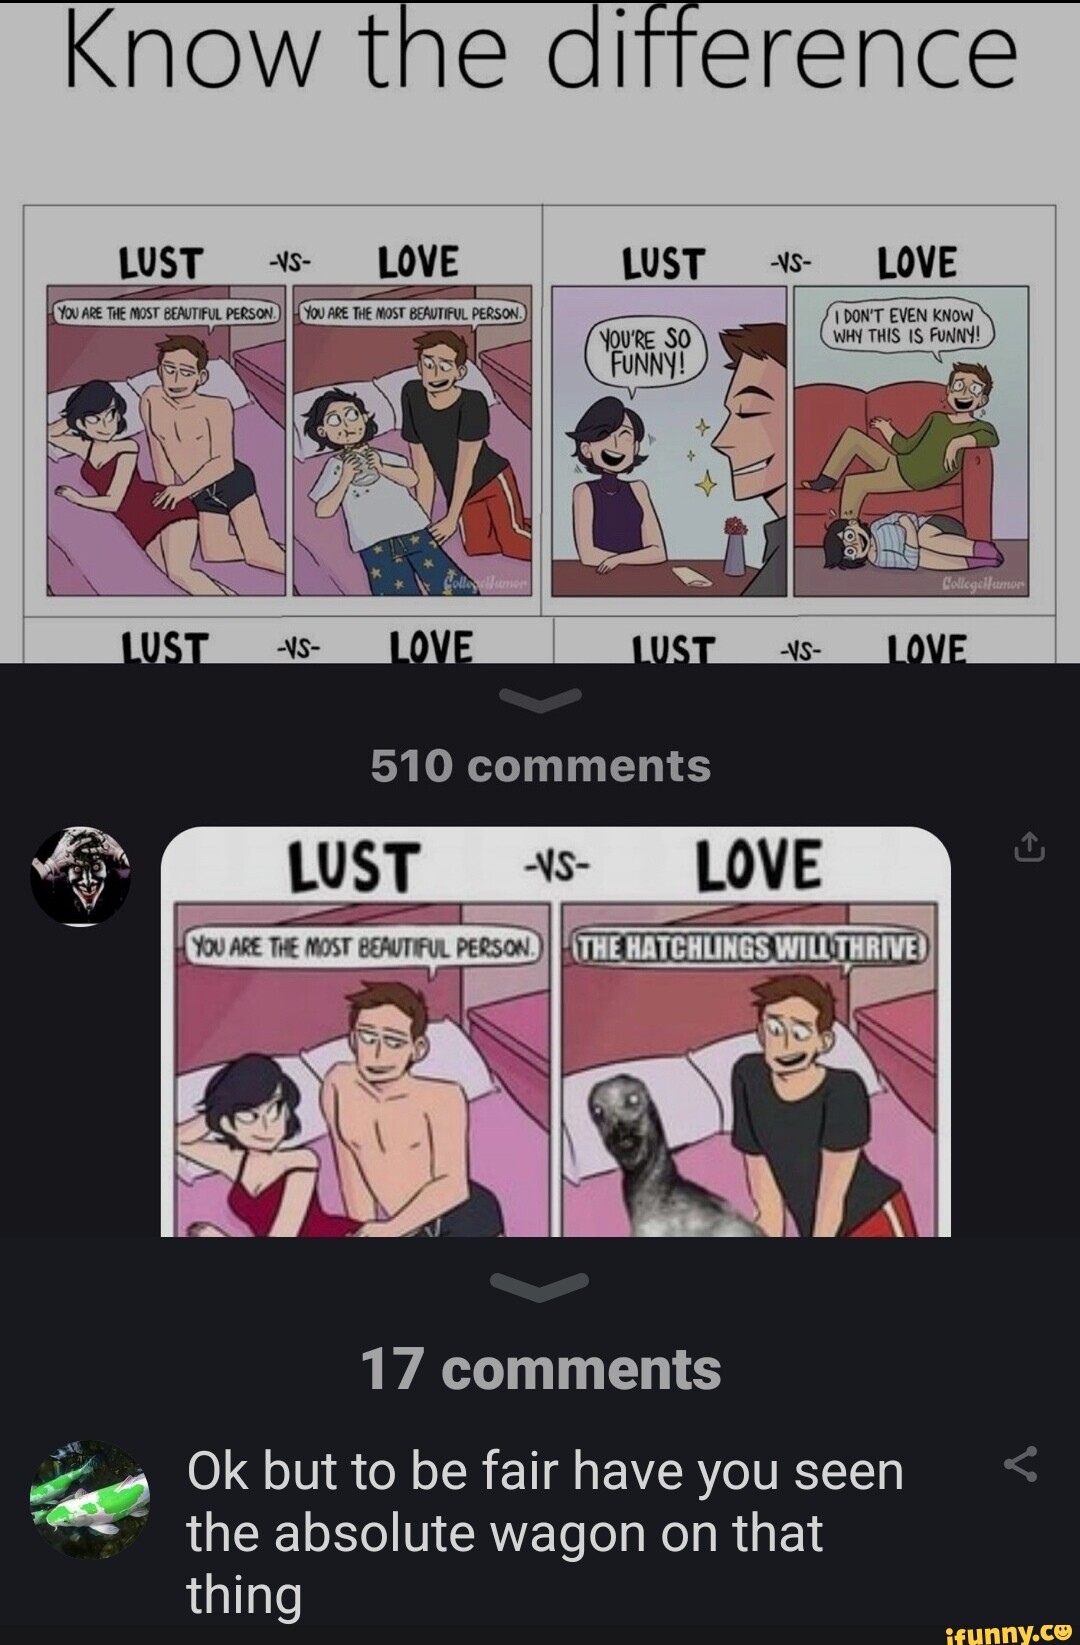 lust vs love